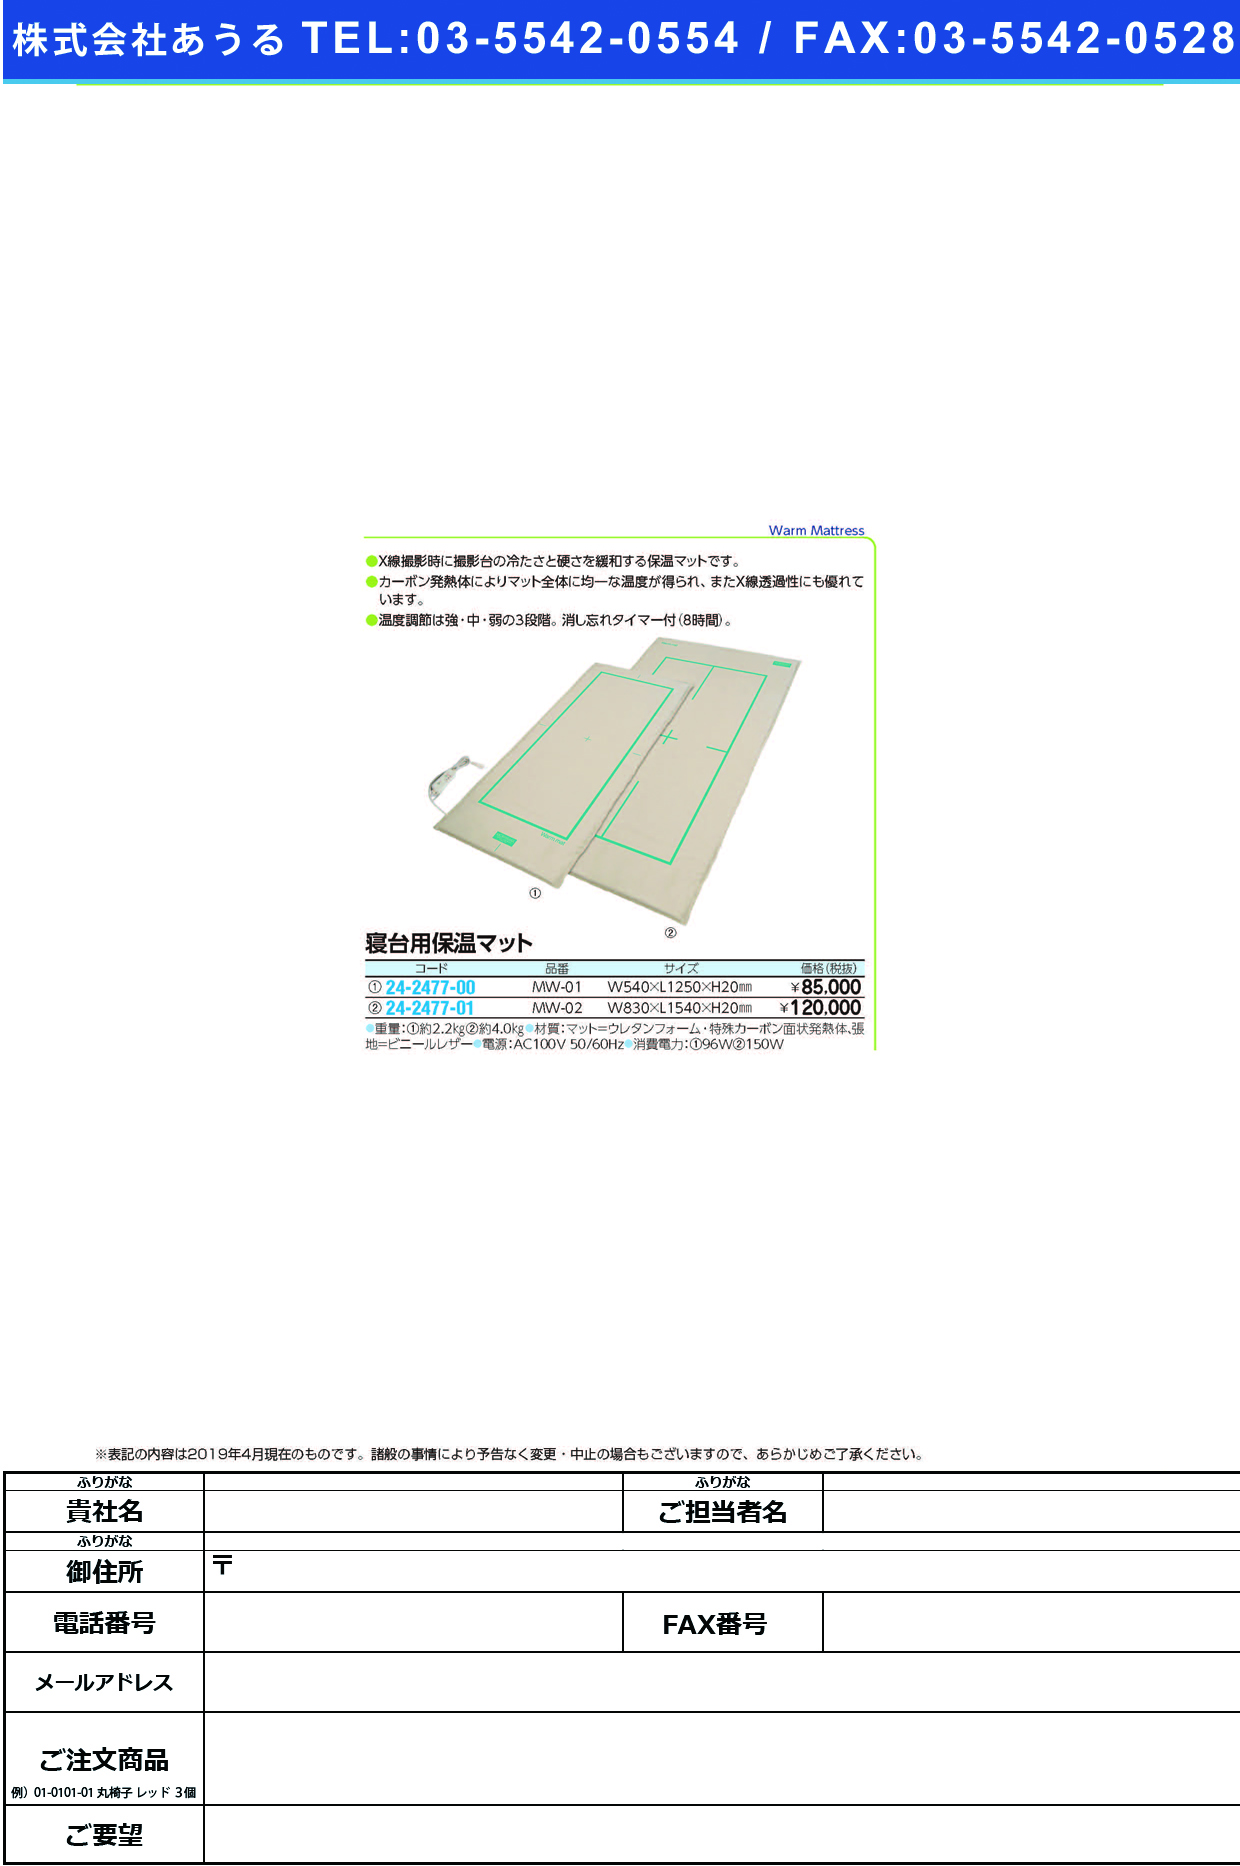 (24-2477-00)寝台用保温マット MW-01 ｼﾝﾀﾞｲﾖｳﾎｵﾝﾏｯﾄ【1台単位】【2019年カタログ商品】